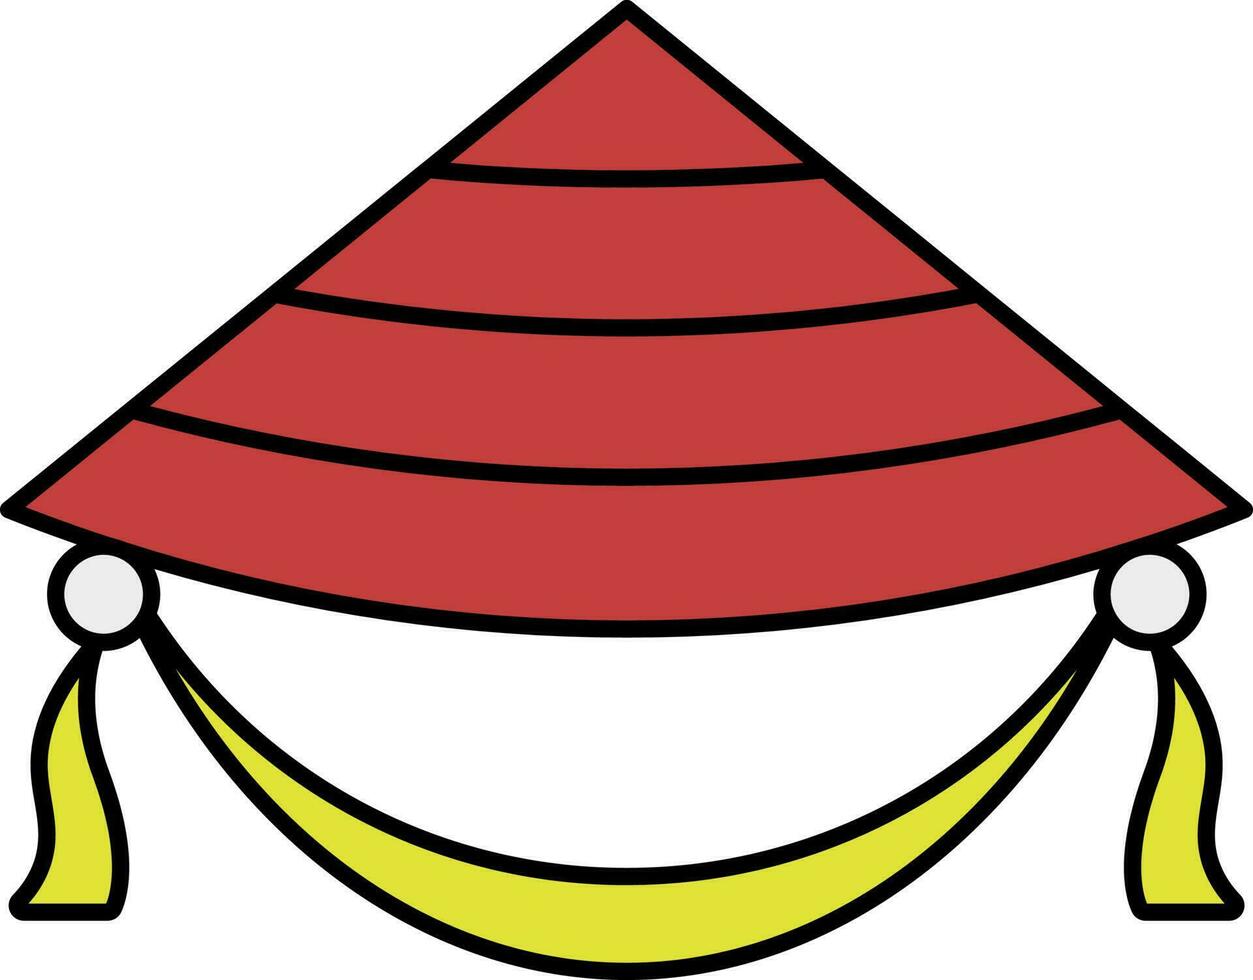 röd och gul konisk hatt ikon eller symbol. vektor